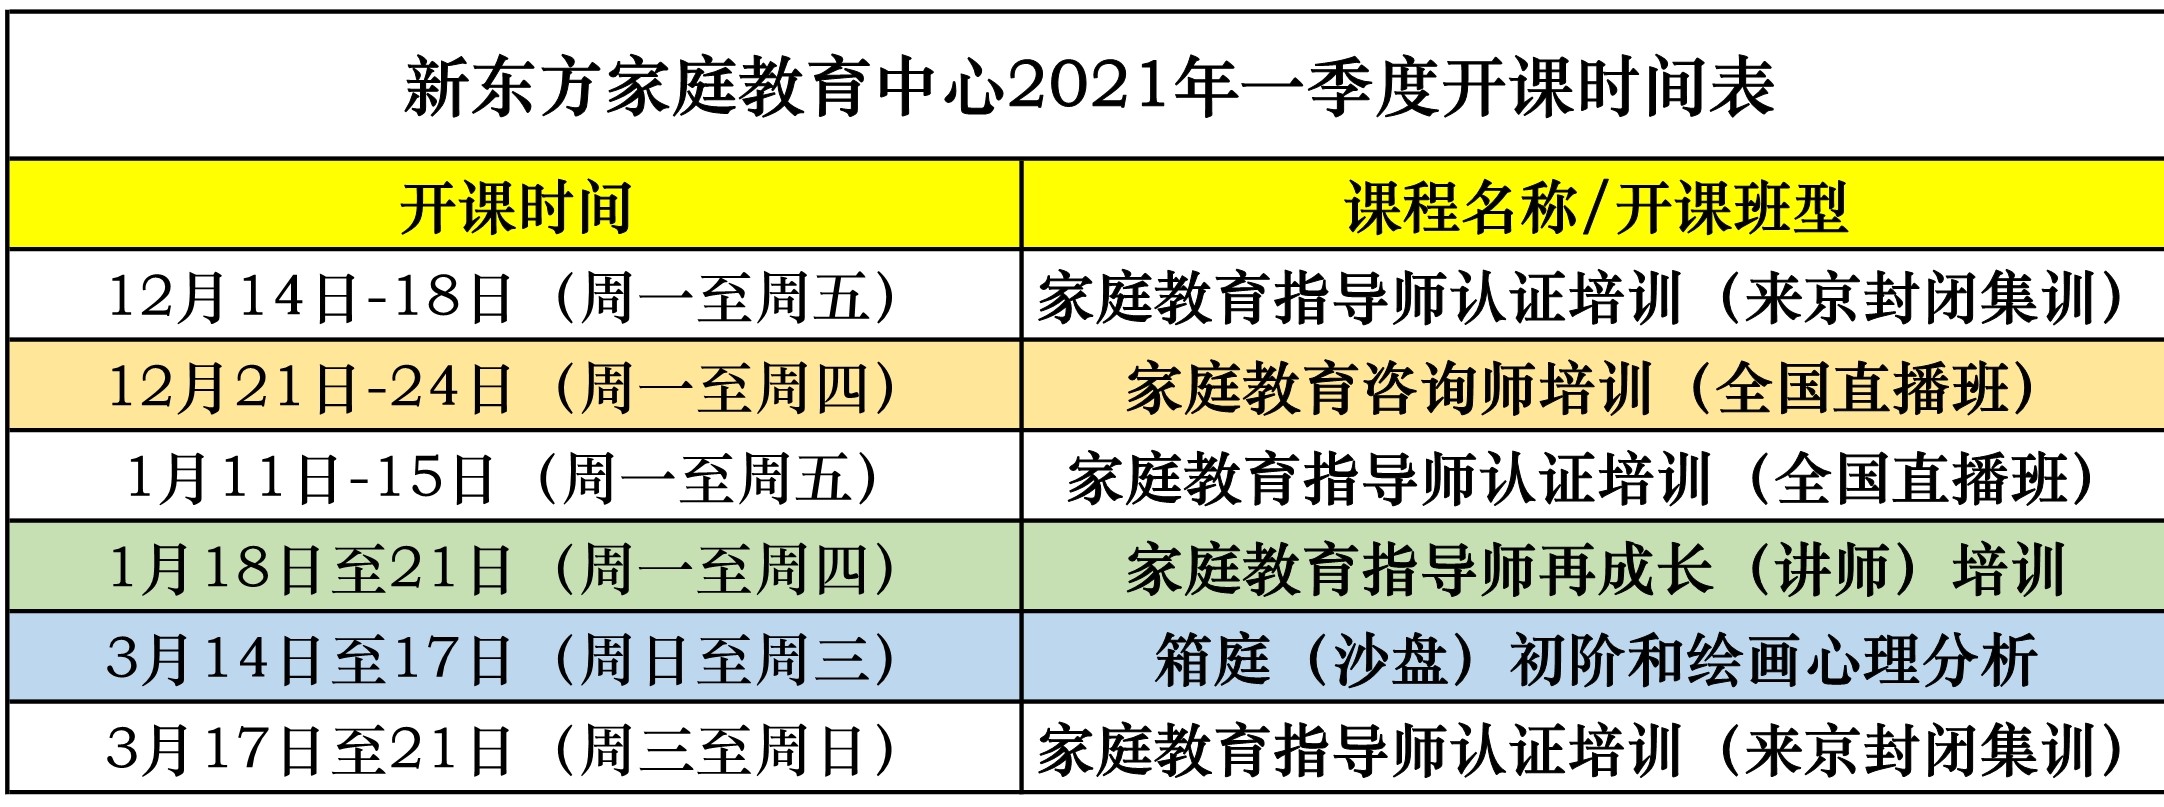 2021年一季度开课时间表.jpg